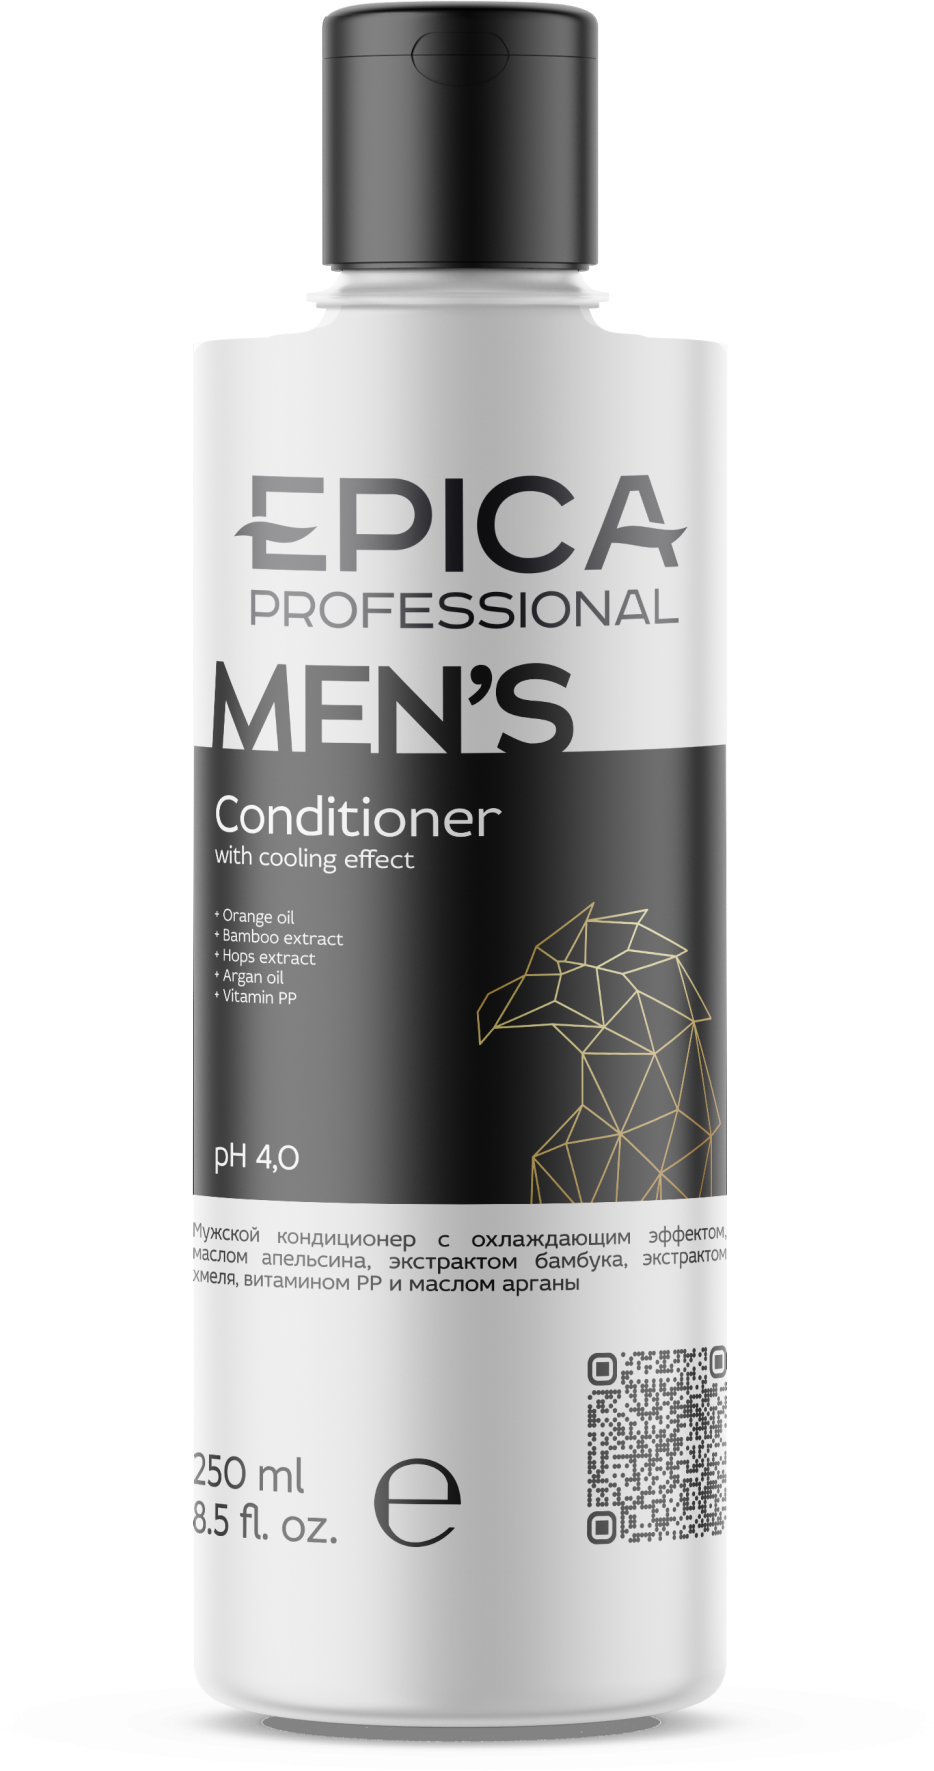 EPICA Professional Men's Мужской кондиционер с охлаждающим эффектом, 250 мл